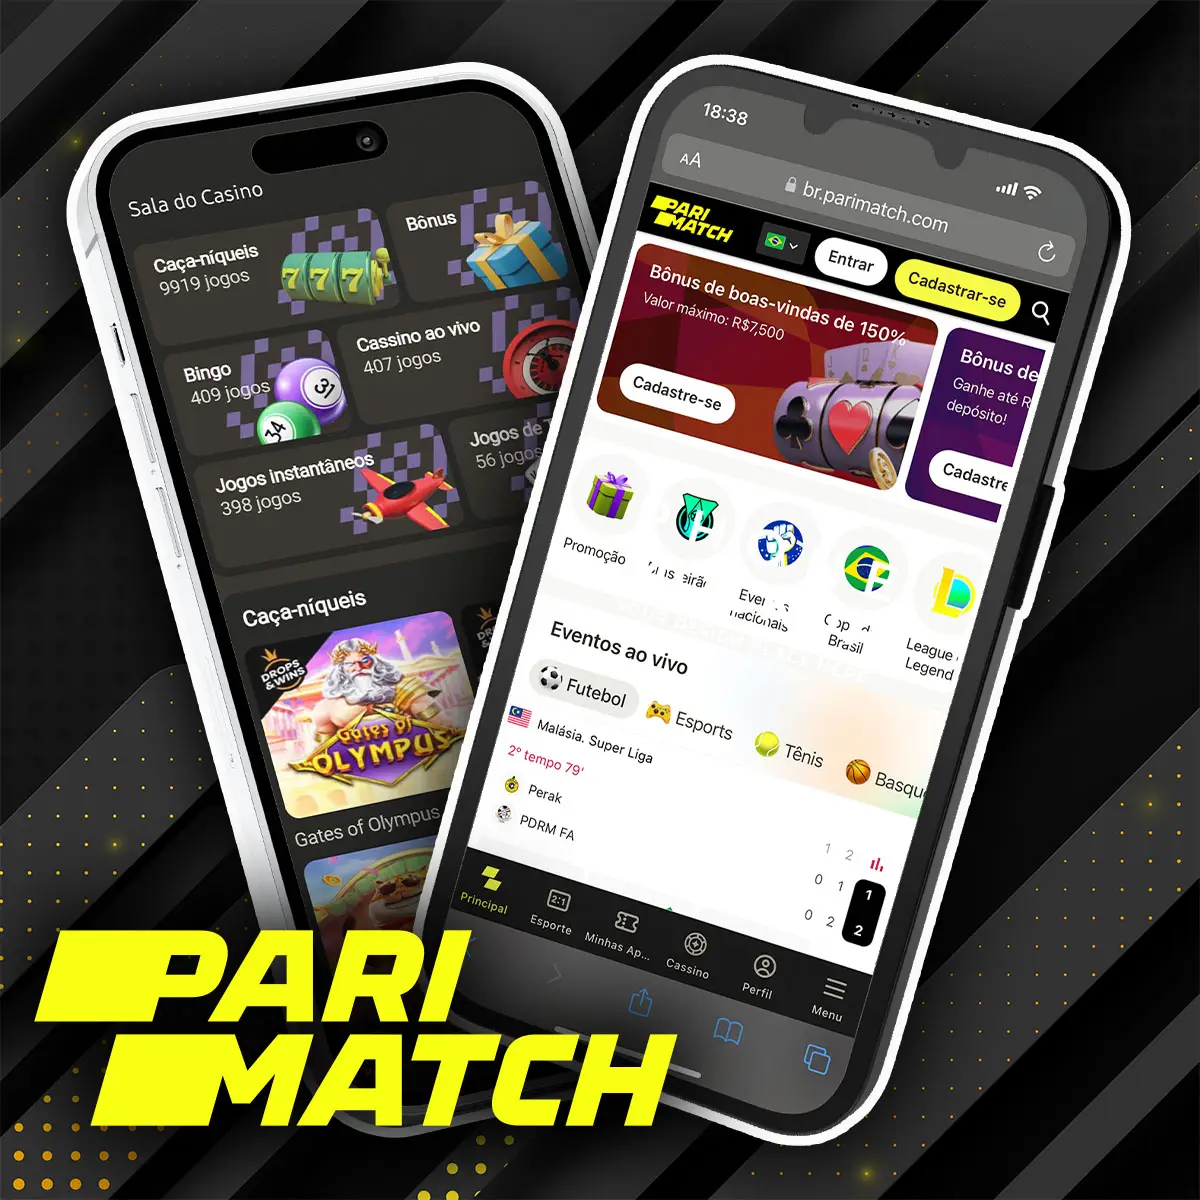 Comparação da versão móvel e do aplicativo da casa de apostas Parimatch no mercado de apostas brasileiro